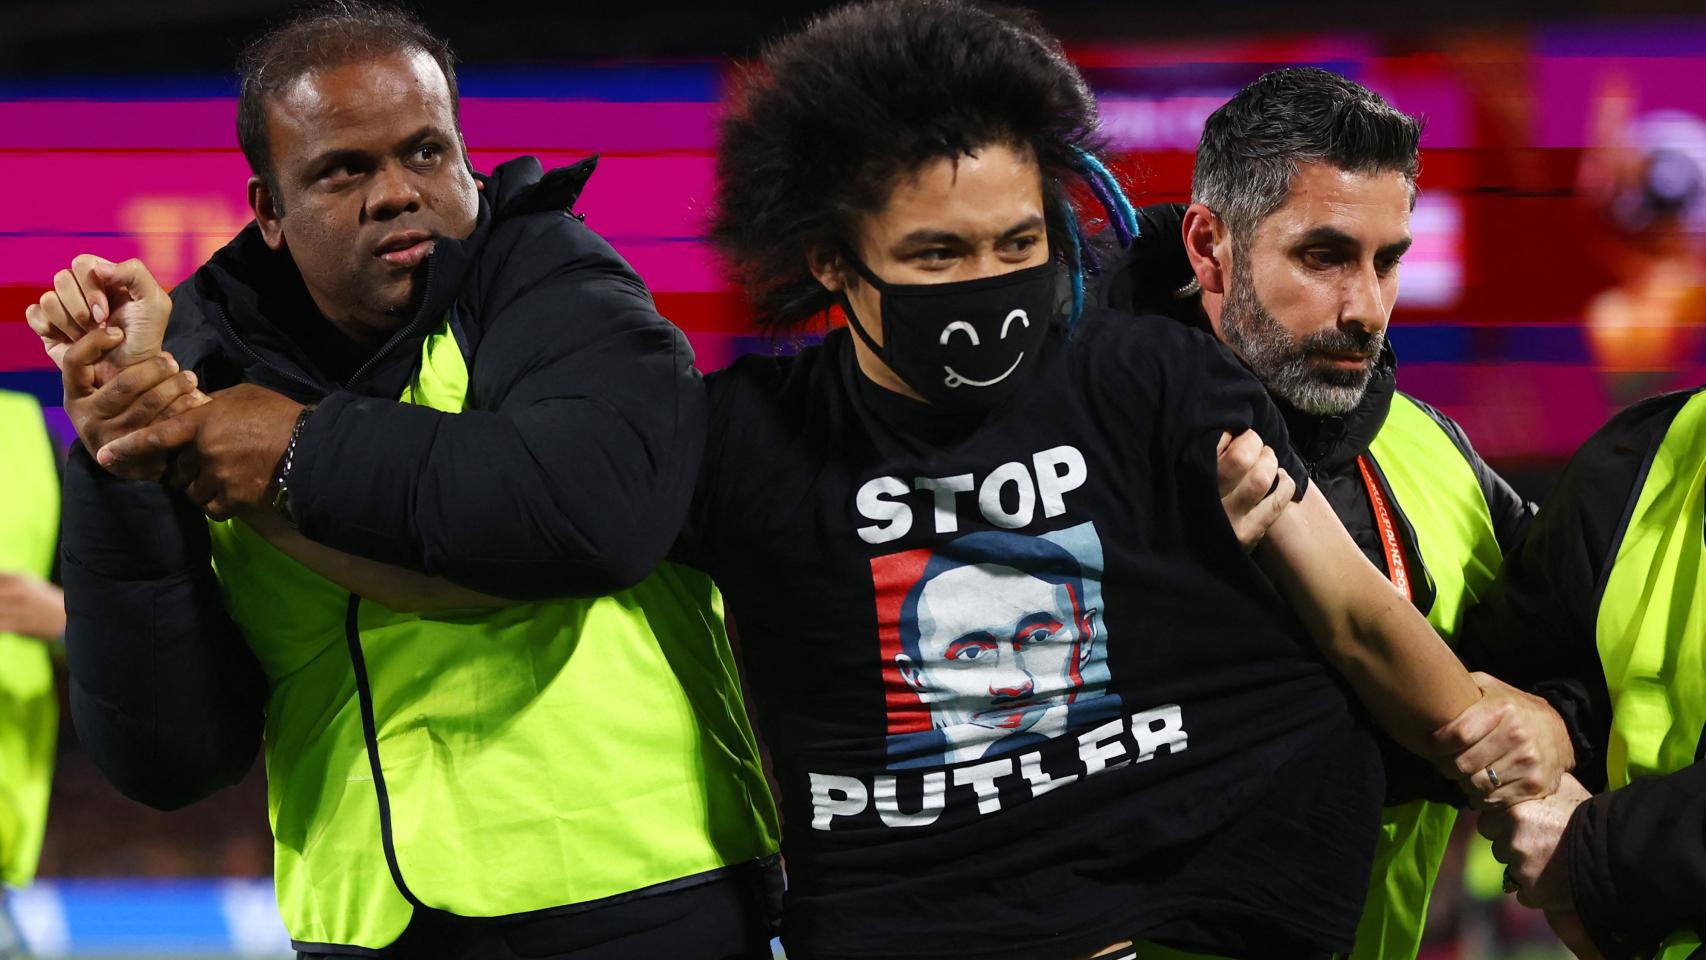 El espontáneo, con la camiseta de 'Stop Putler', se marcha detenido en plena final del Mundia.